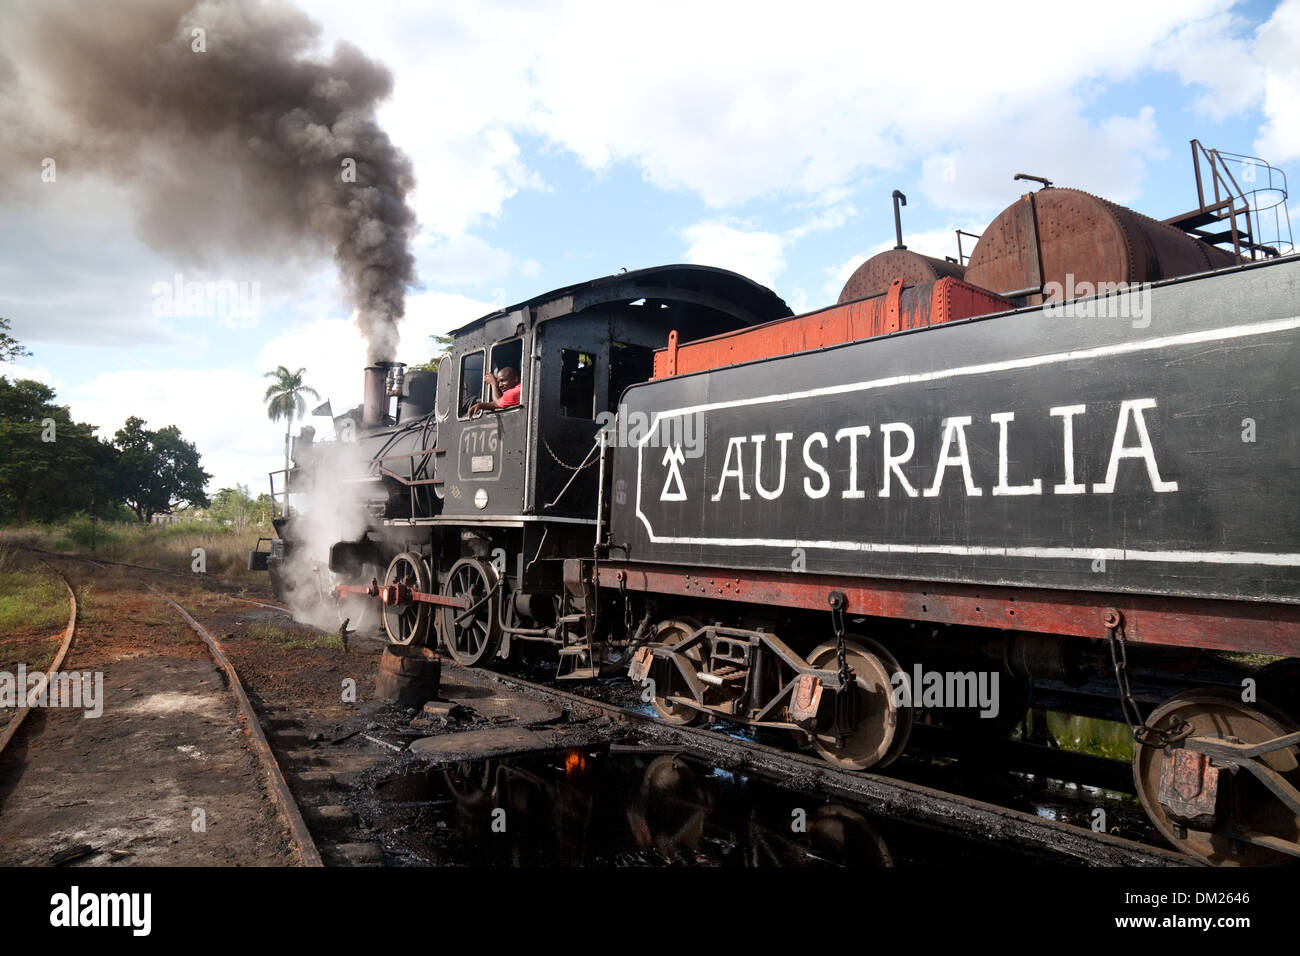 Lavorare il motore di vapore, in un villaggio chiamato Australia, Cuba, Caraibi Foto Stock